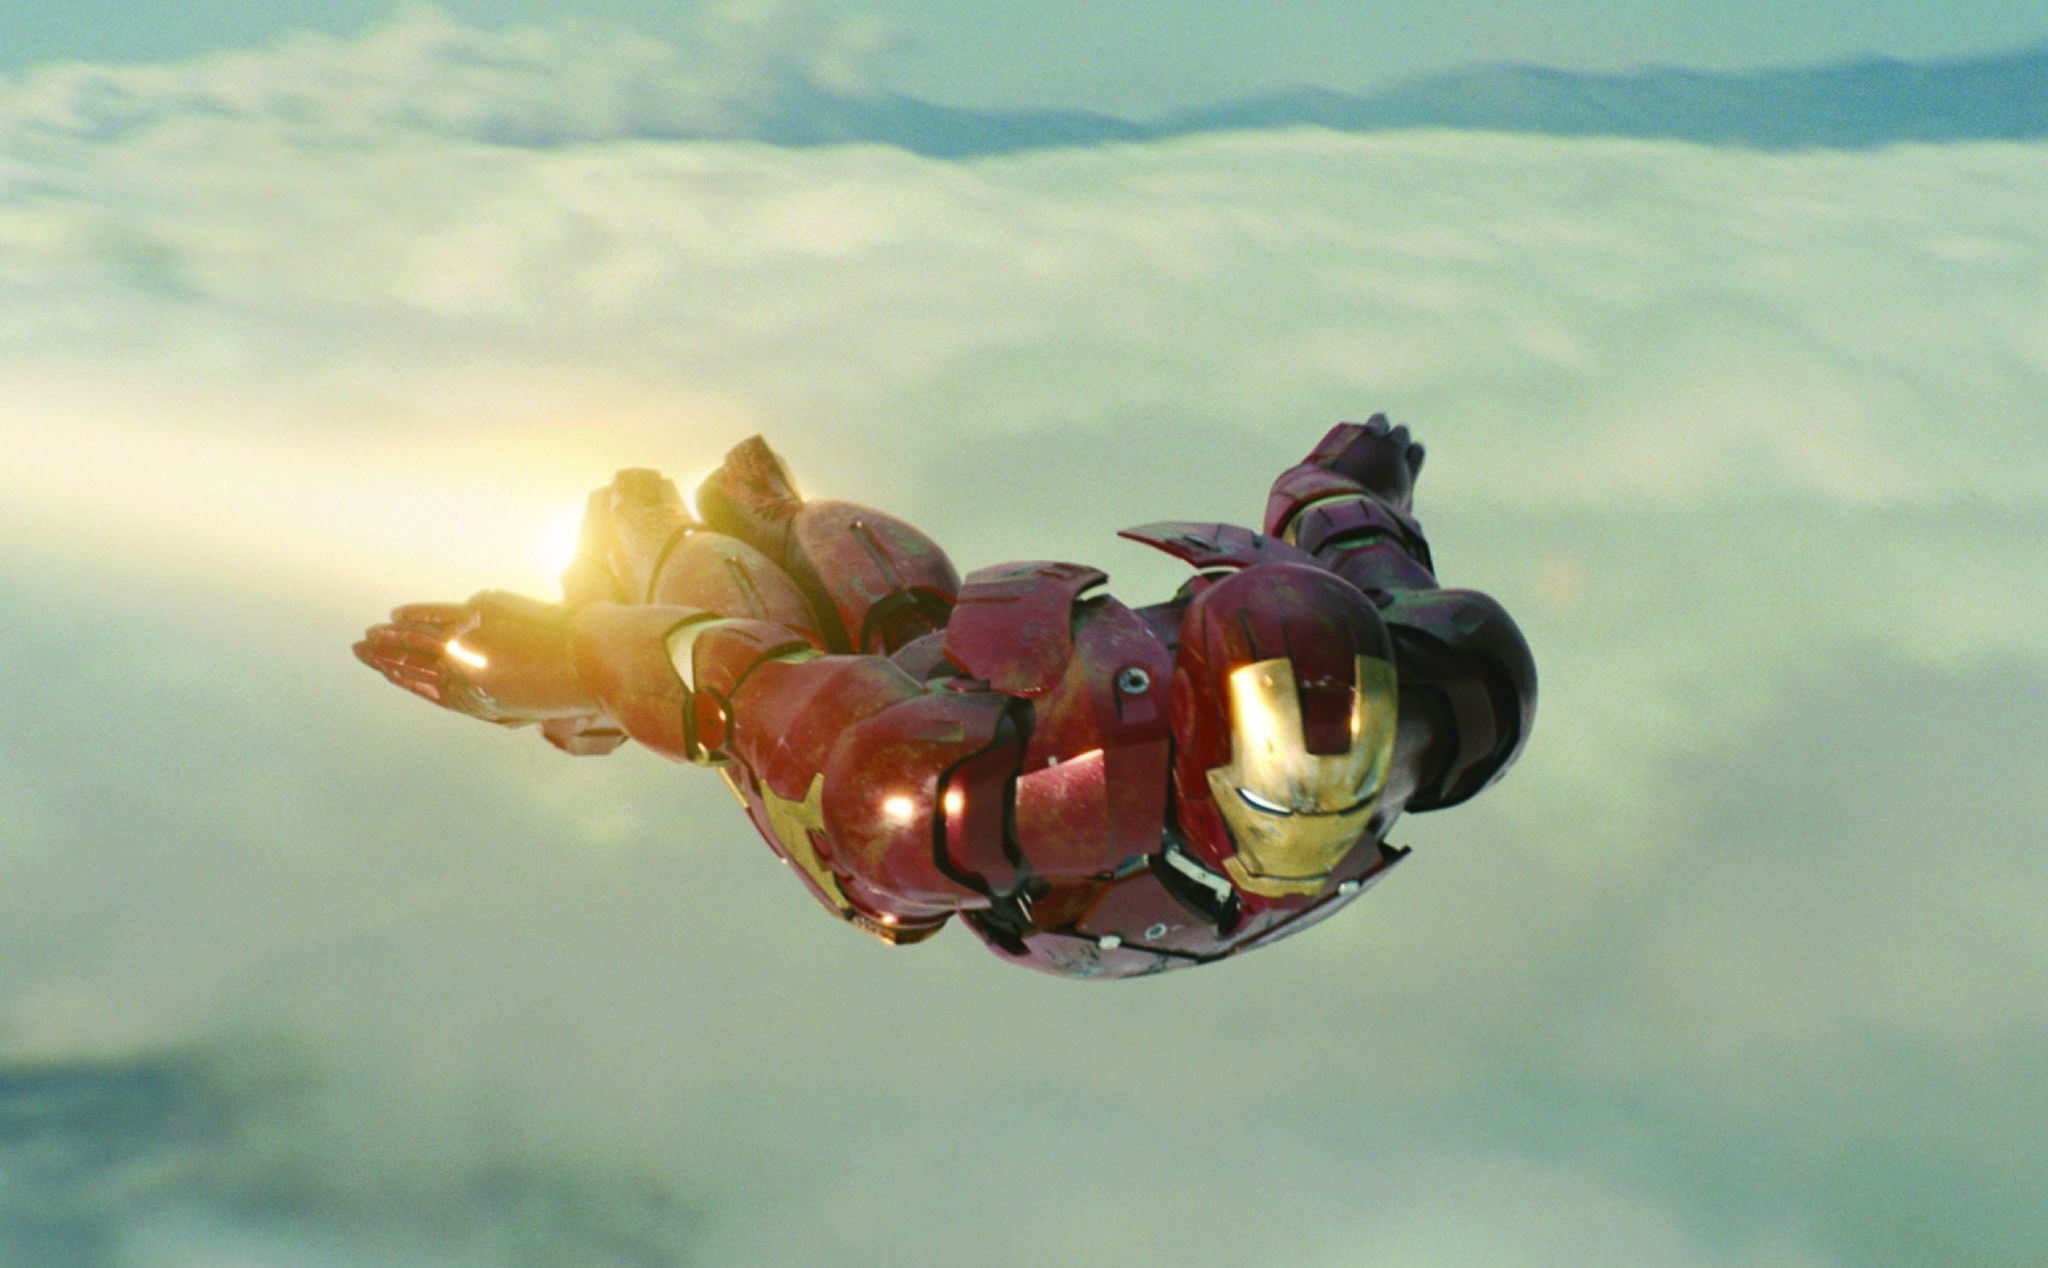 Iron Man: Hãy khám phá hình ảnh đầy uy lực của người sắt Iron Man - siêu anh hùng đầy quyền năng từ thế giới Marvel. Bộ giáp Iron Man đầy sáng tạo cùng vũ khí hiện đại sẽ khiến bạn say mê ngay từ cái nhìn đầu tiên.